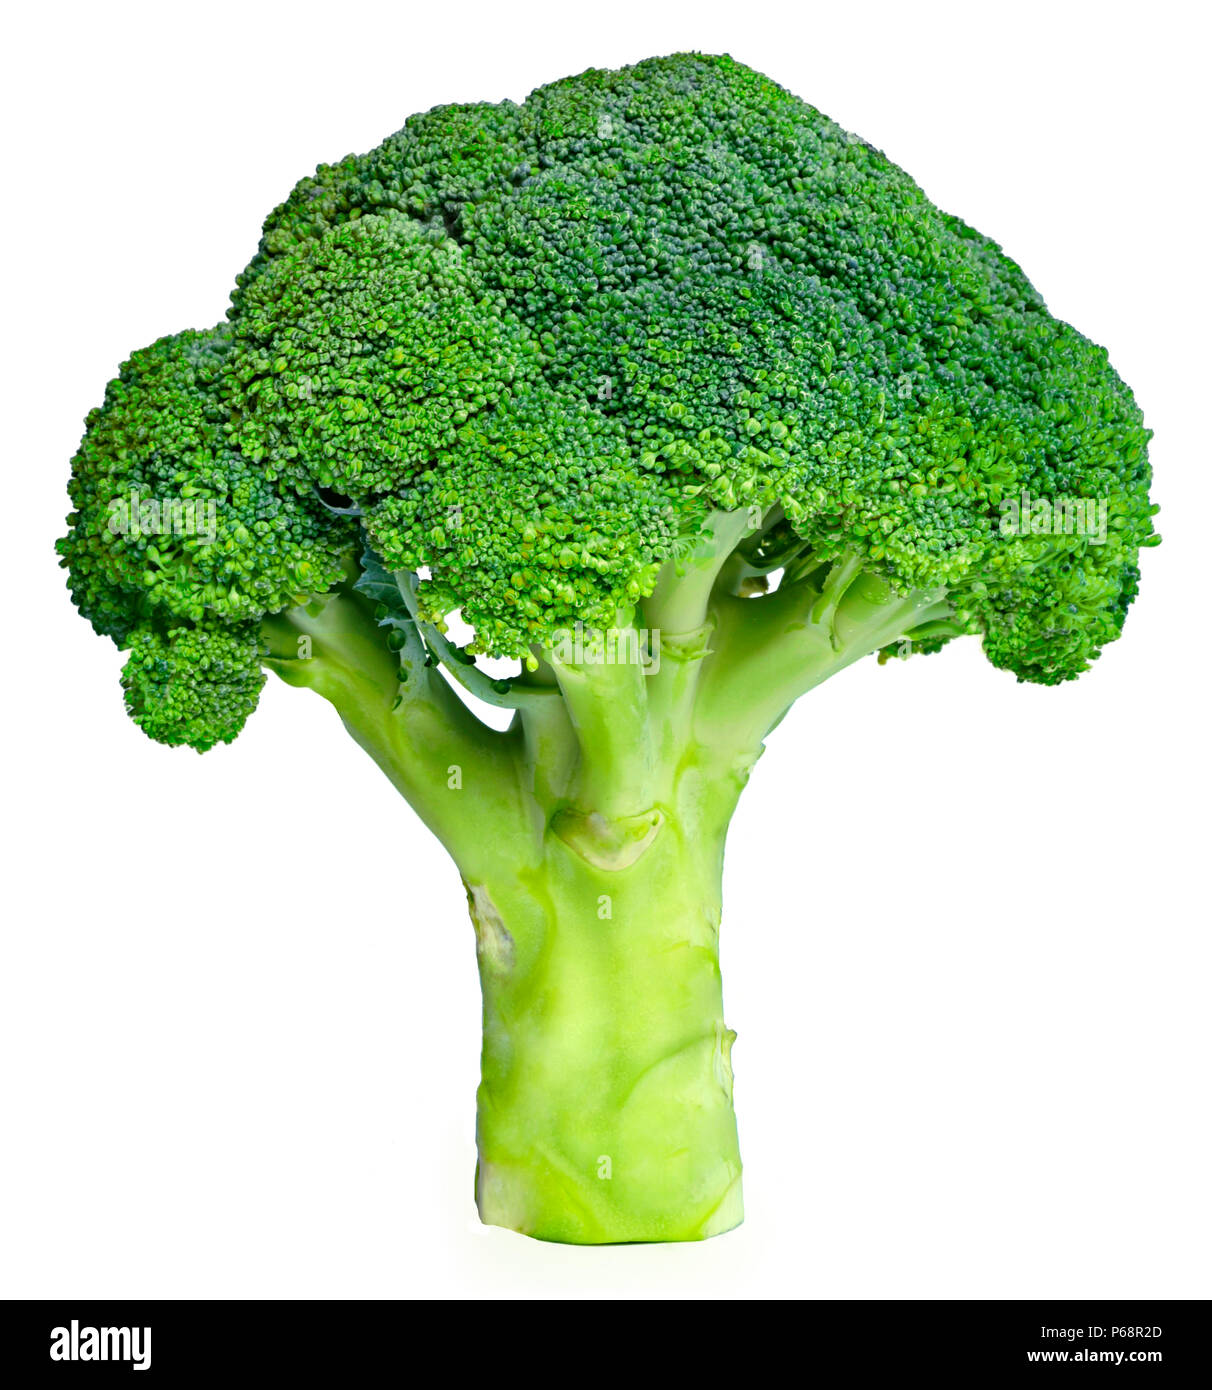 Le brocoli, le vert frais isolé sur fond blanc. Légumes mûrs, d'une saine alimentation. Le brocoli, ingrédient pour la cuisson en vitamines et faible en calories. Banque D'Images